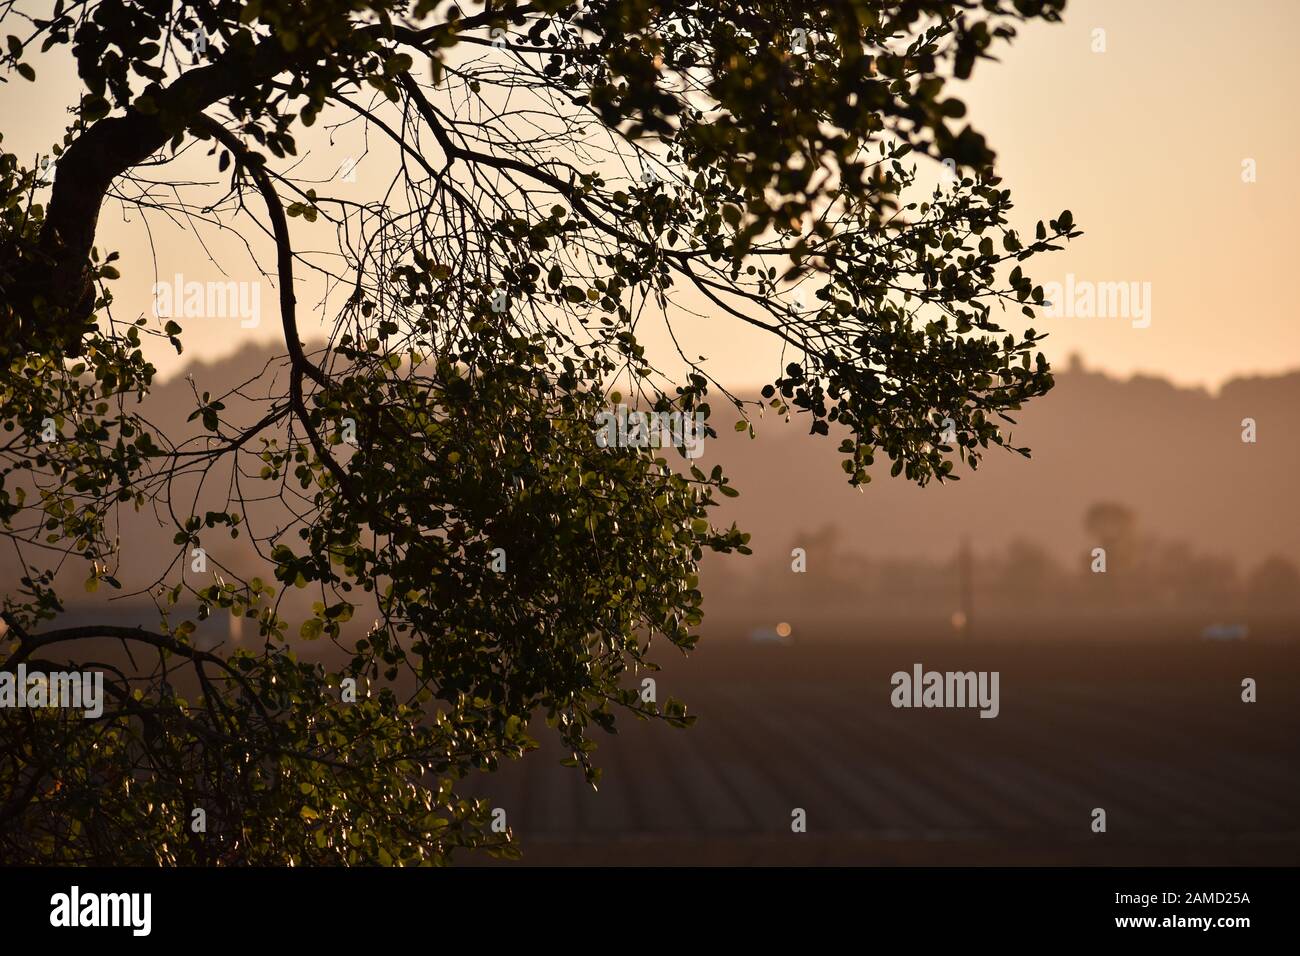 Vue sur les terres agricoles de la vallée de Pajaro en Californie au crépuscule, avec une branche de chêne au premier plan. Banque D'Images